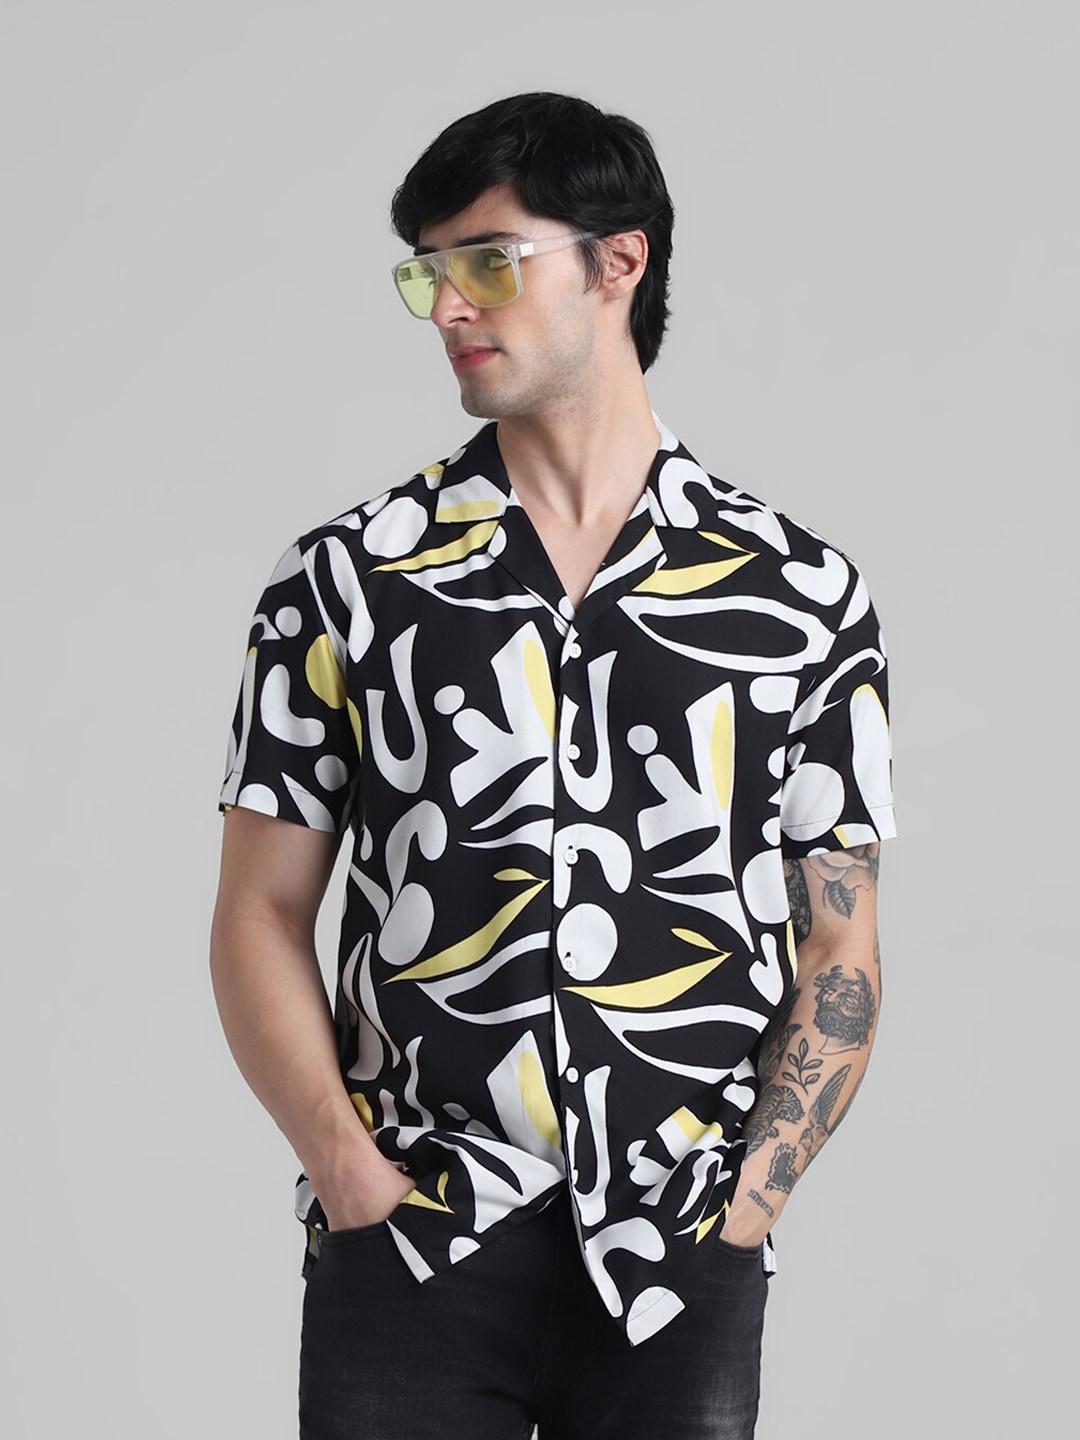 jack & jones abstract printed cuban collar casual shirt